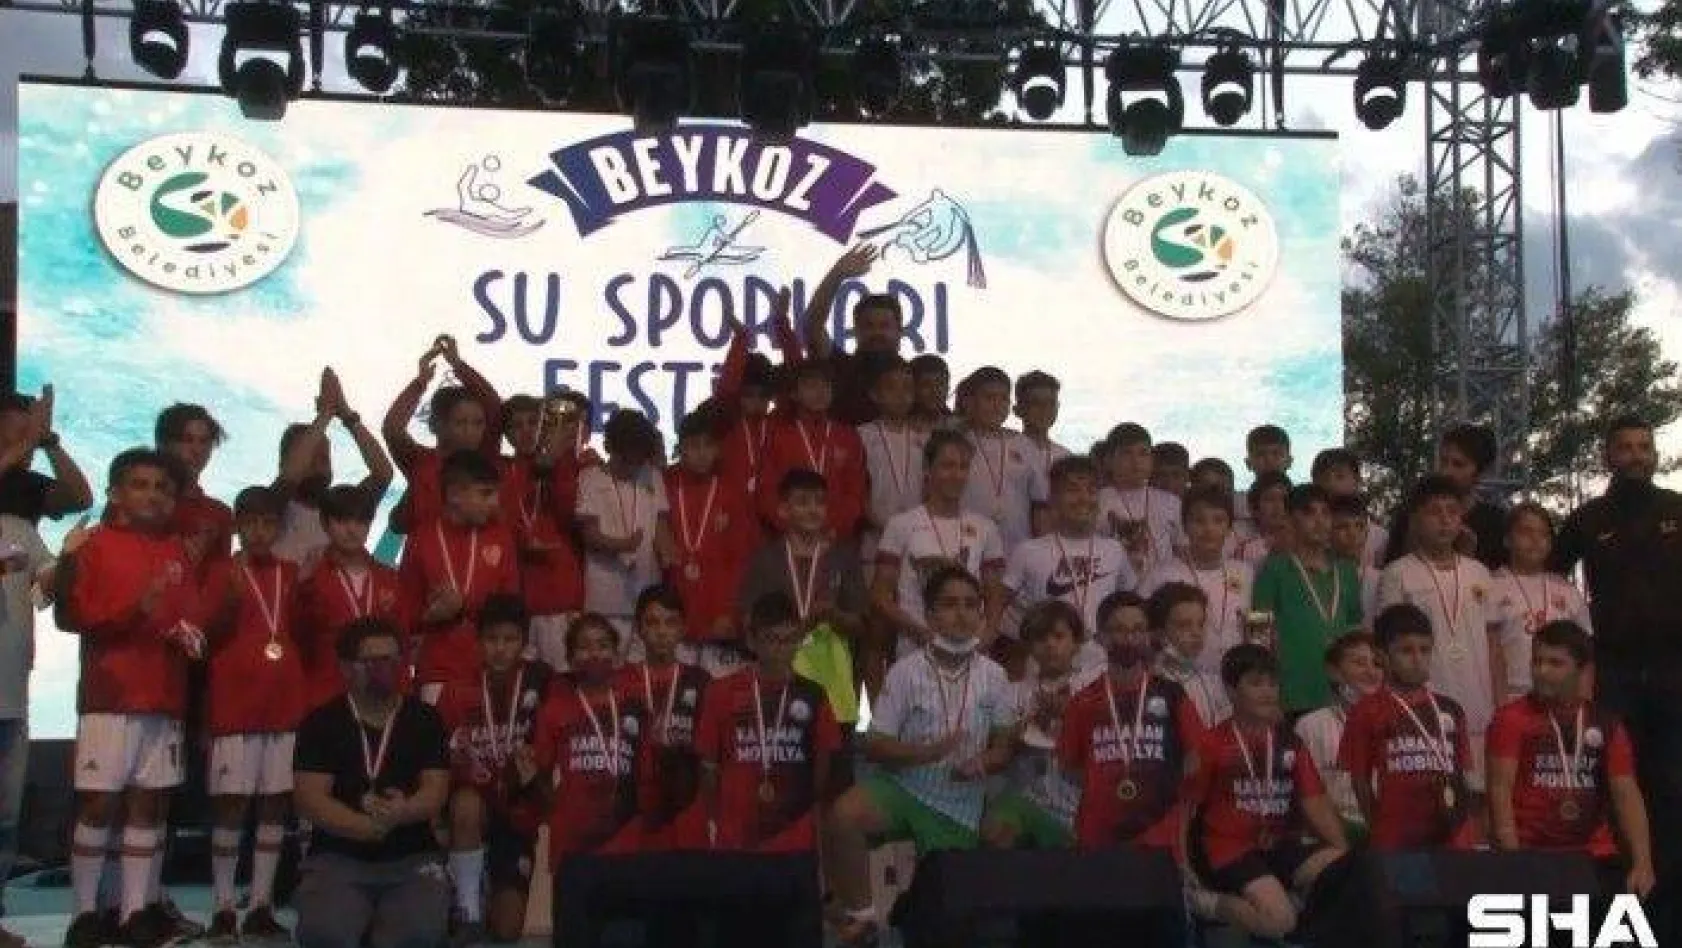 Beykoz Su Sporları Festivalinde ödüller sahiplerini buldu